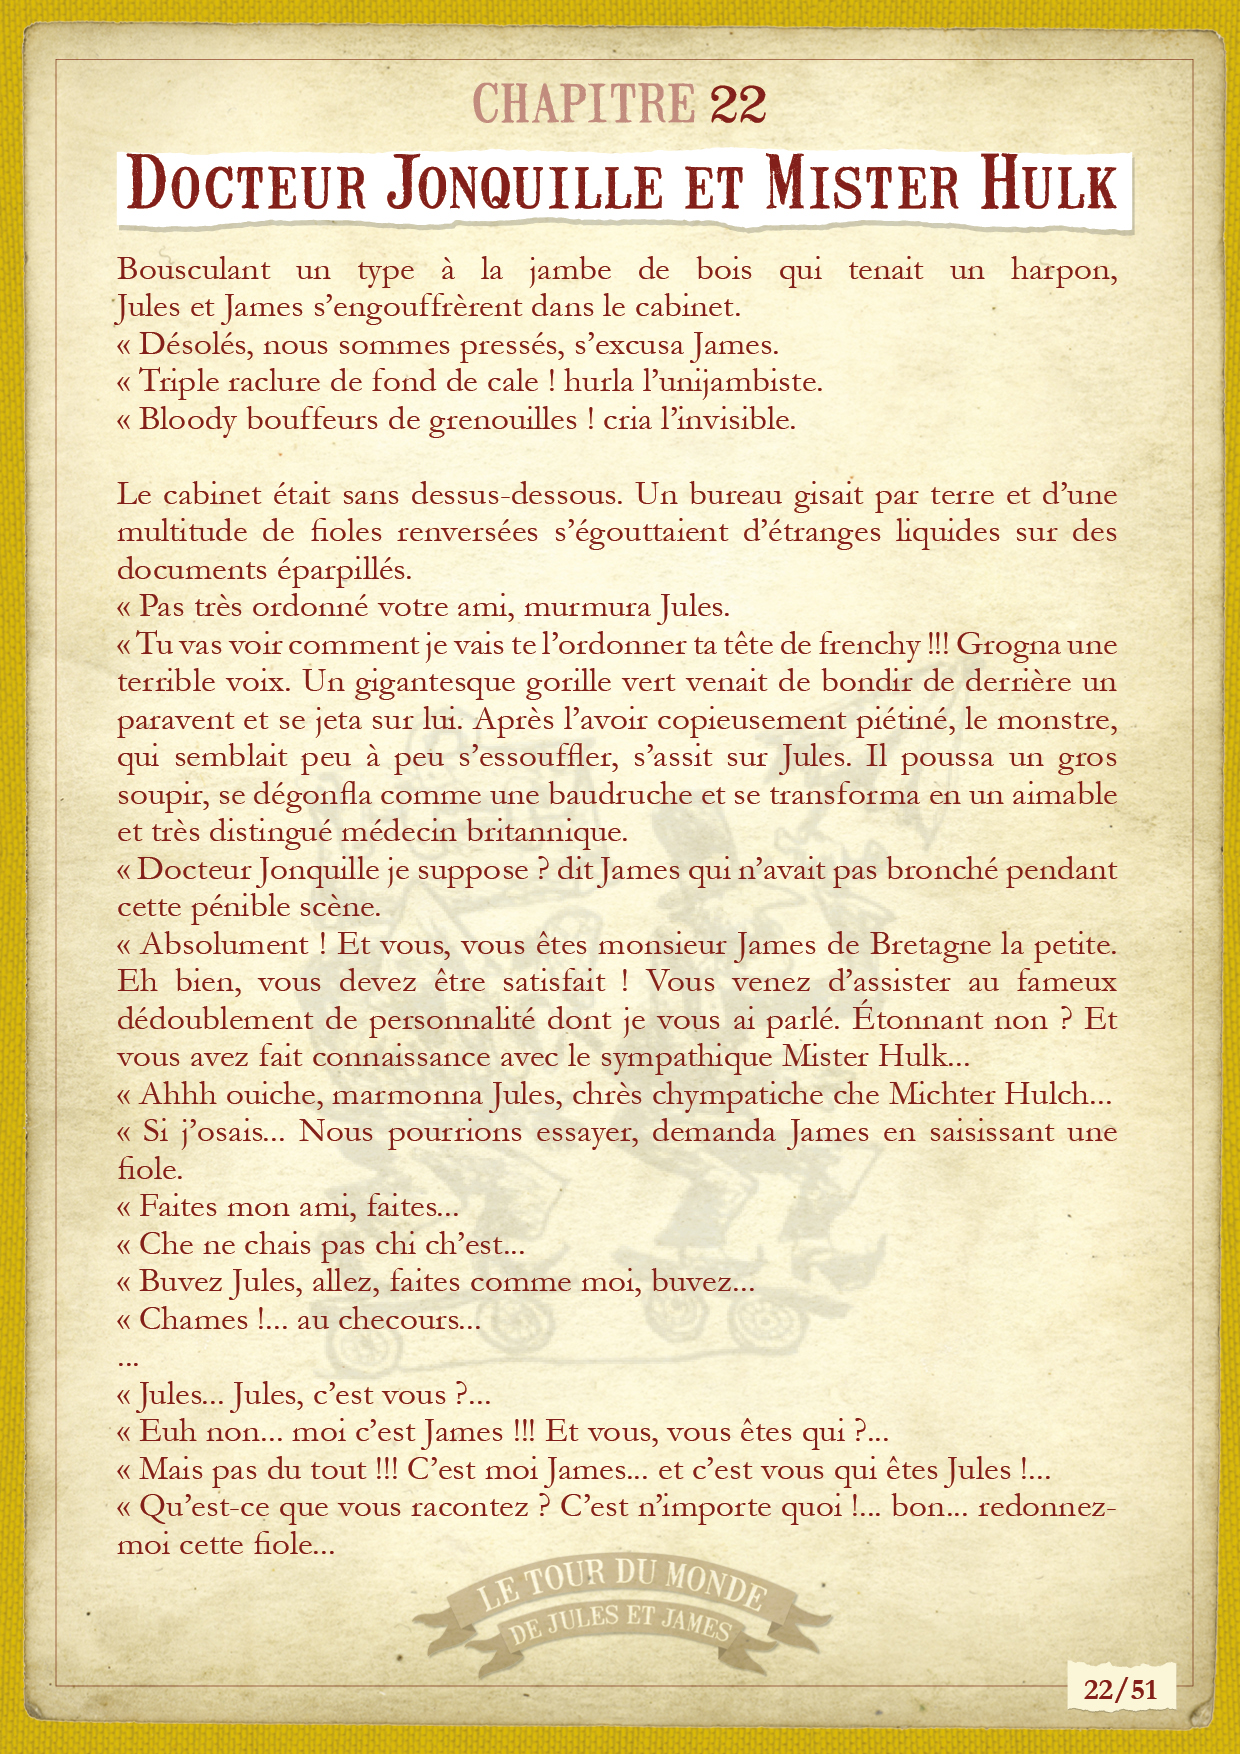 Chapitre 22 - Le tour du monde de Jules et James, raconté en 51 chapitres